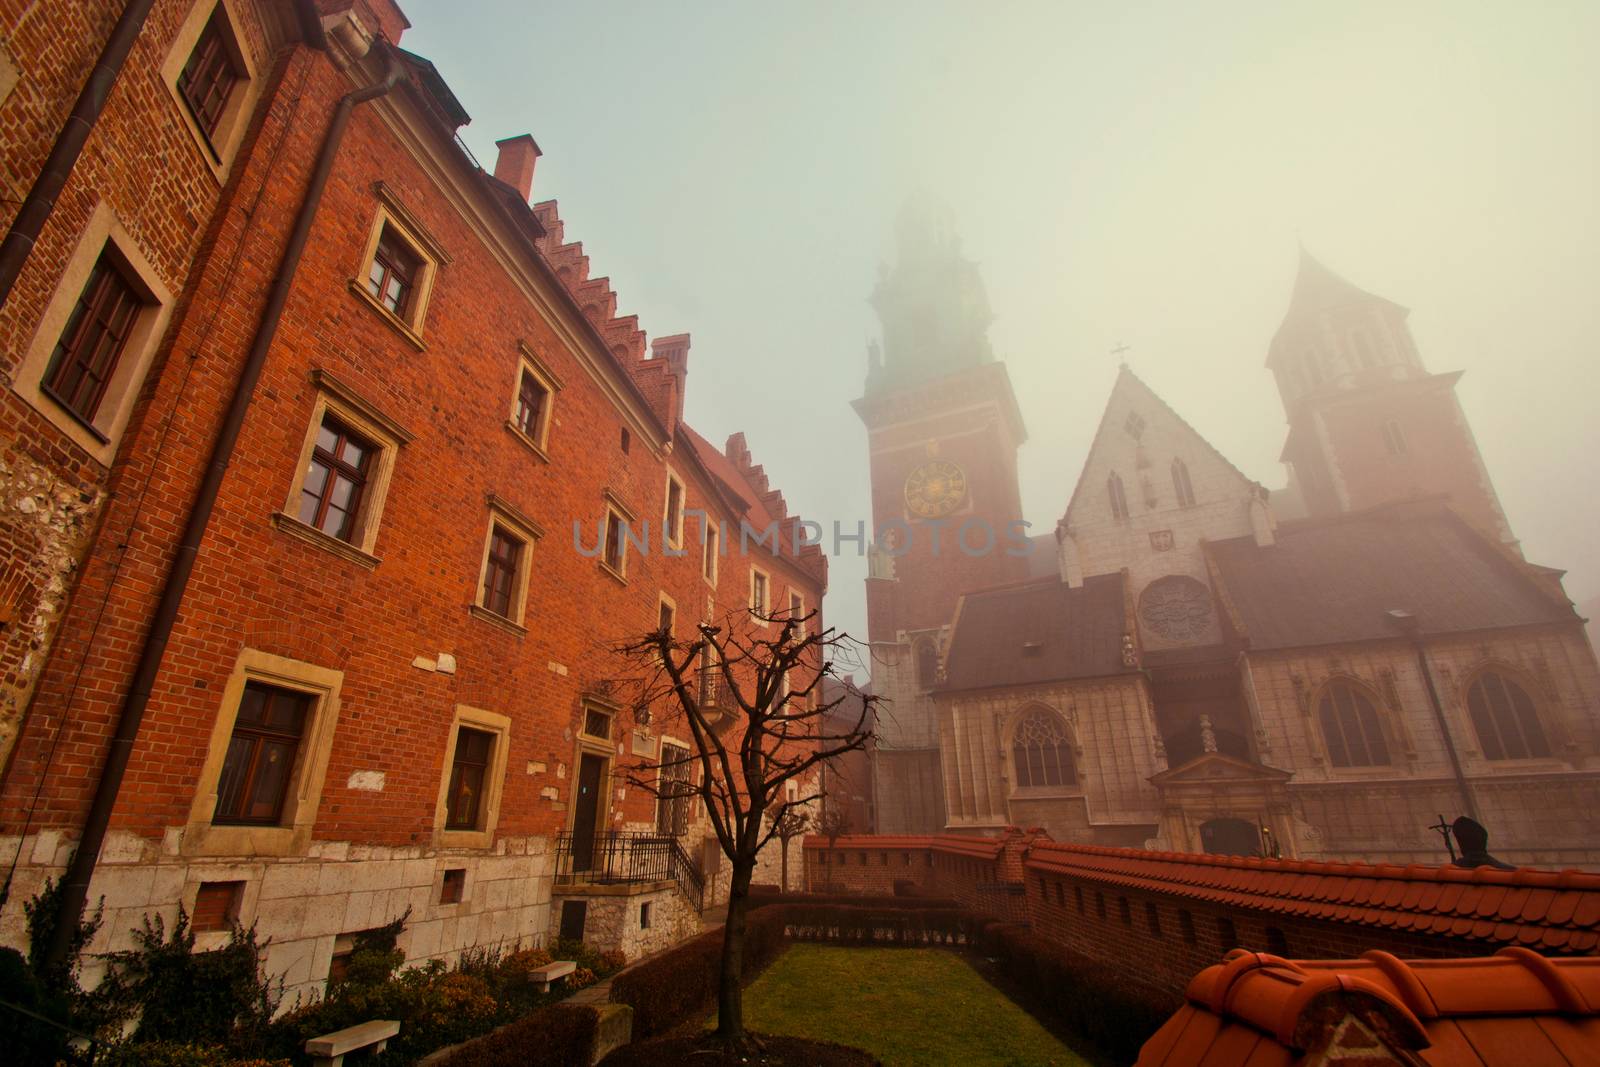 Church in the fog, Wawel, Cracow, Poland. by satariel